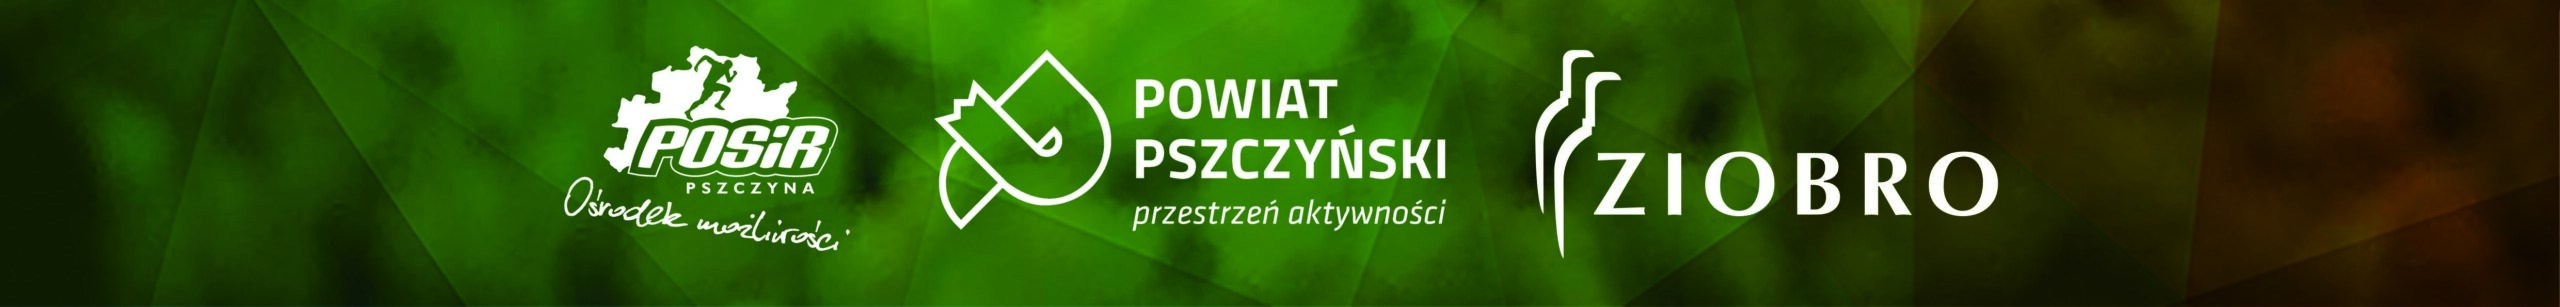 XIII KMPP w Piłce Nożnej - logotypy organizatorów - POSiR, Powiat Pszczyński, Ziobro S.C.